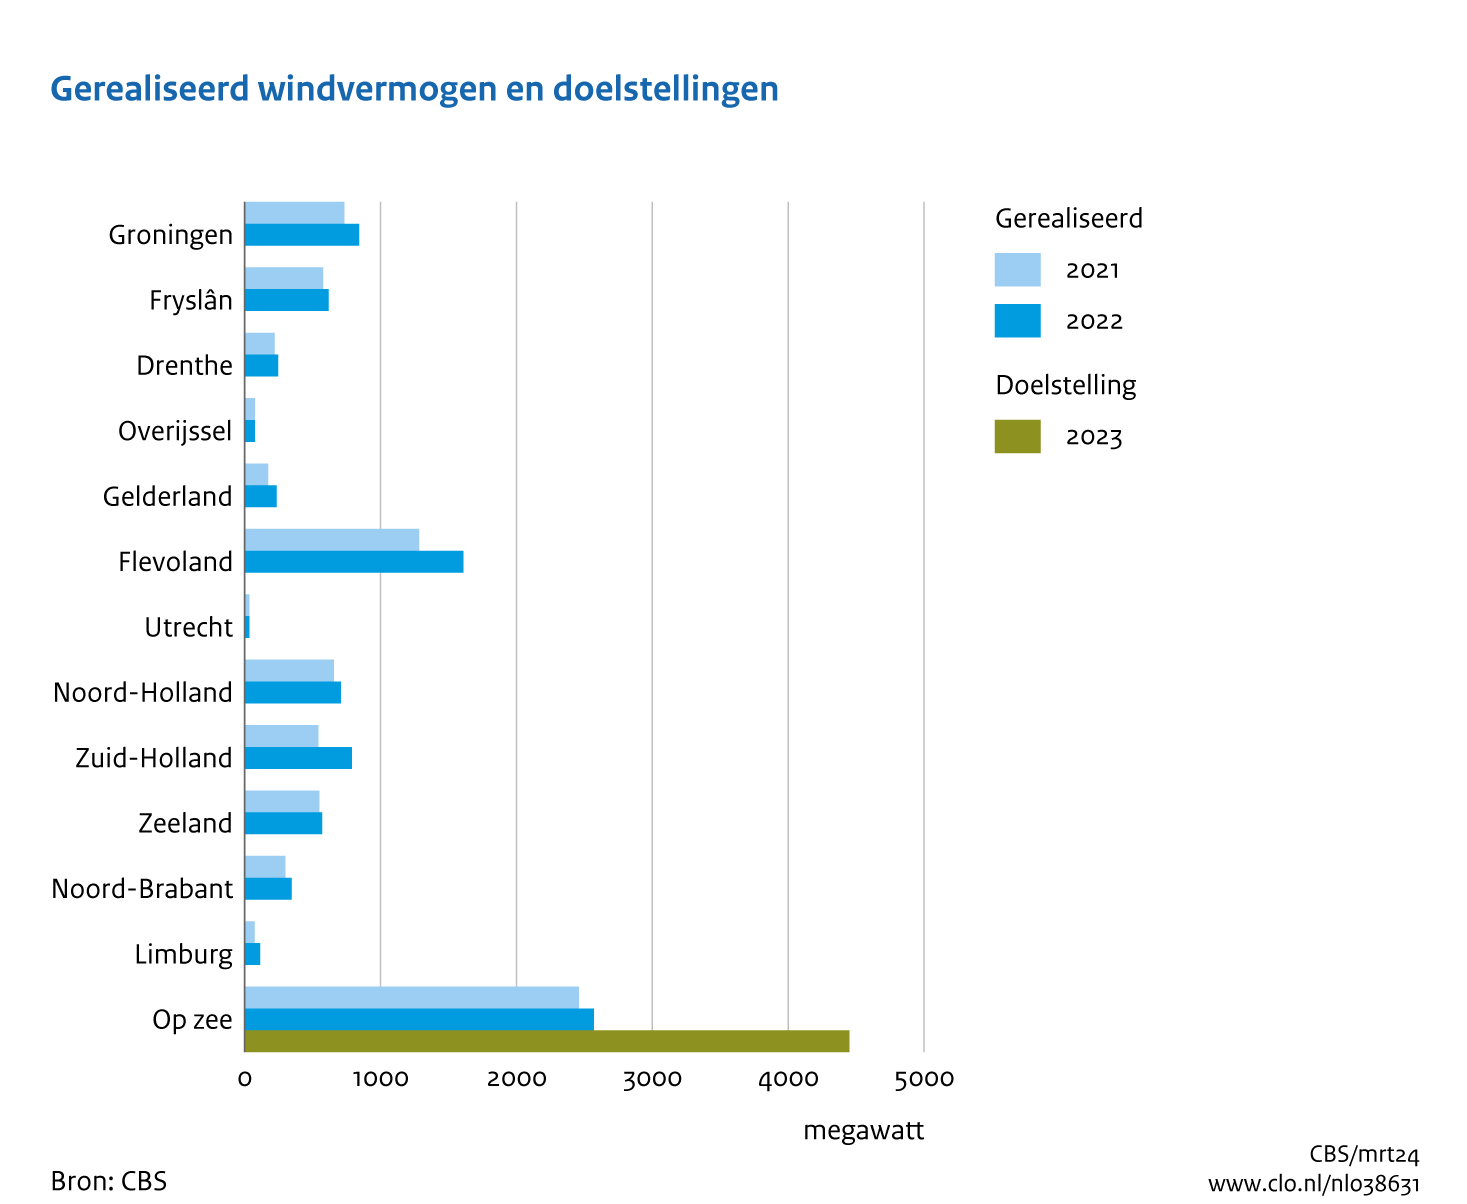 Staafgrafiek met het opgesteld vermogen aan windenergie in megawatt per provincie eind 2021 en eind 2022. Plus de doelstelling voor het vermogen op zee in 2023. Op zee en in Flevoland is het opgesteld vermogen het hoogst; in Utrecht en Overijssel het laagst. In Flevoland, Zuid-Holland en Groningen is het vermogen aan windenergie het afgelopen jaar het meest toegenomen.